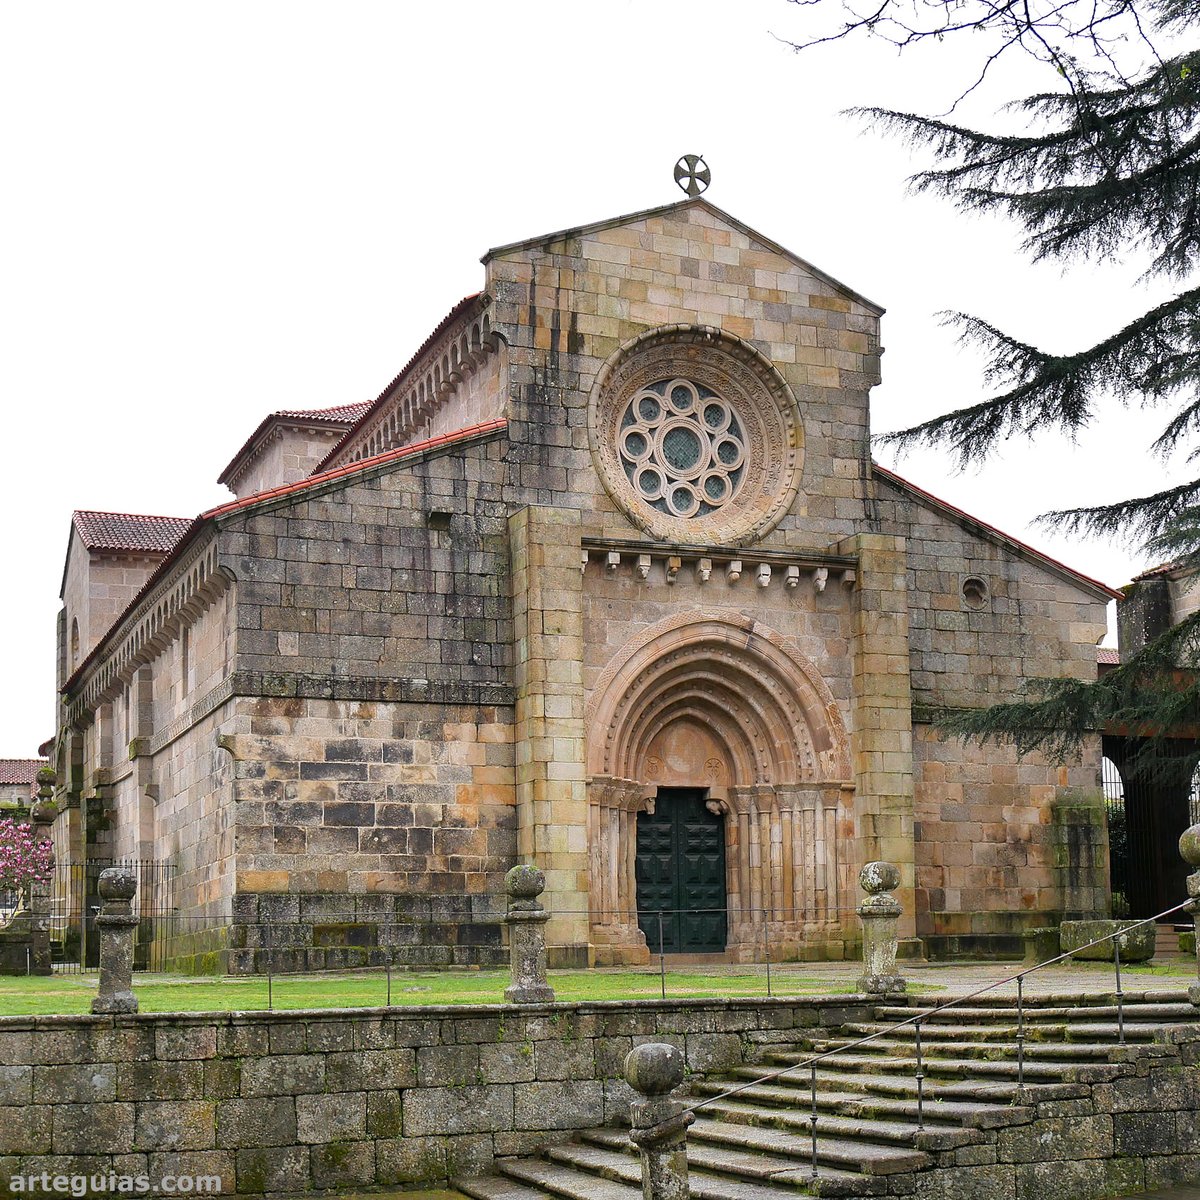 El monasterio portugués de Paço de Sousa tiene dimensiones muy monumentales, especialmente su fachada occidental, que como veis es de gran belleza #Portugal #Oporto #romanico #viajes #arte #arquitectura #rural #monumentos #viajes #turismo